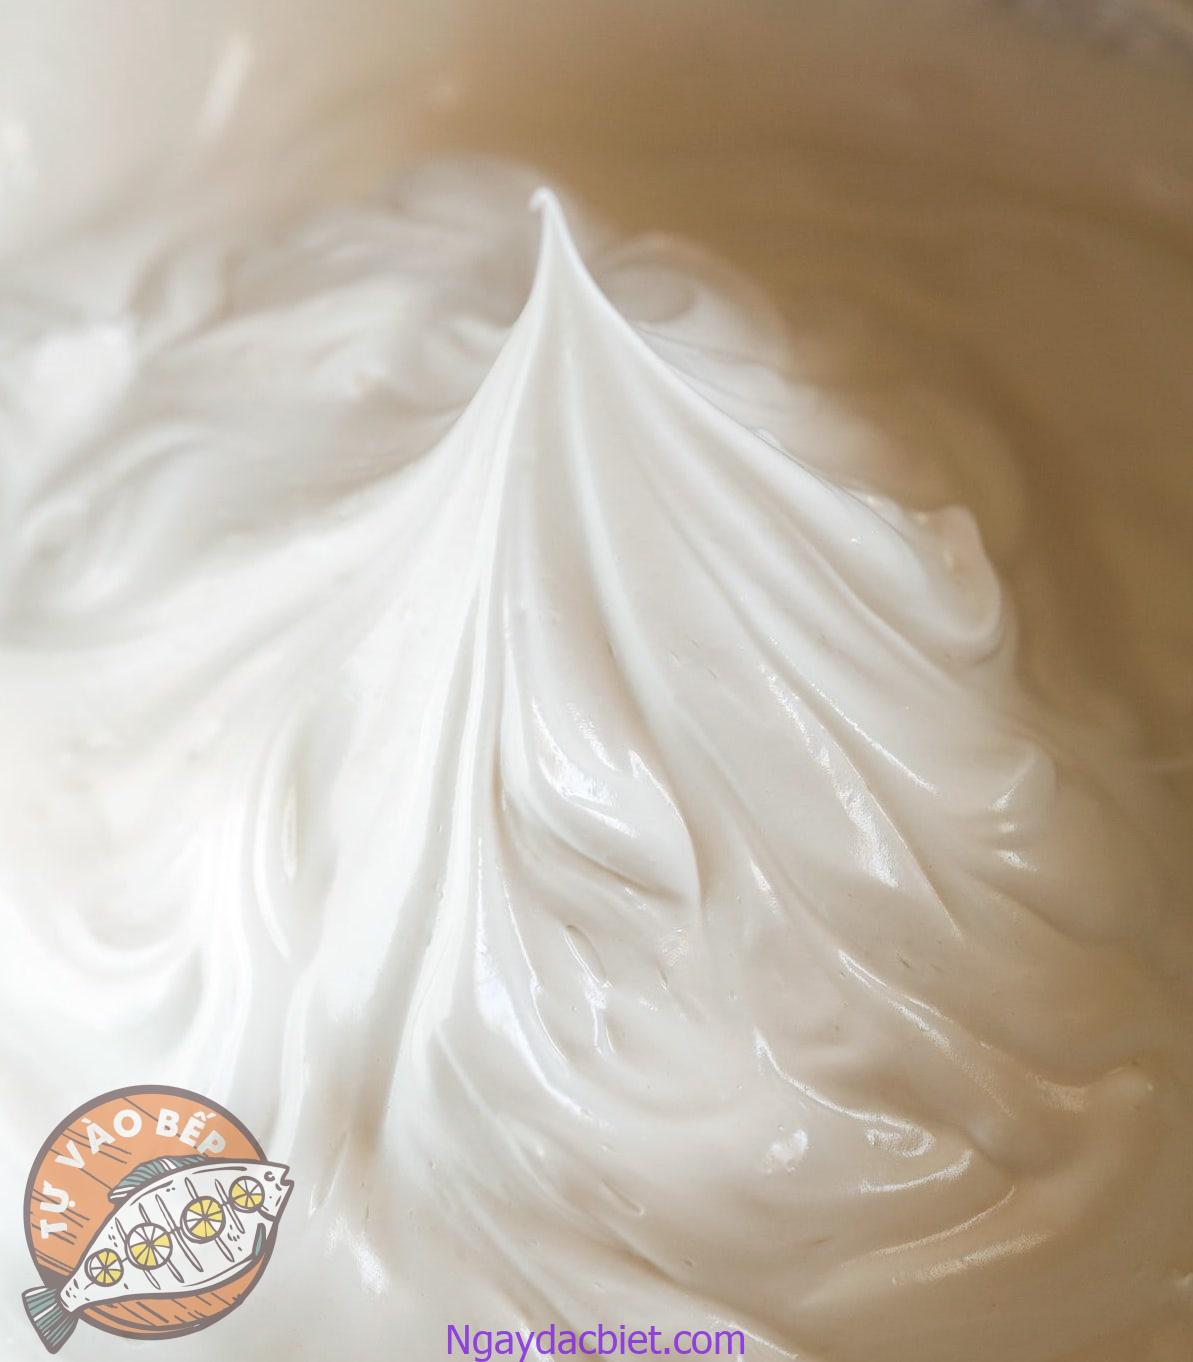 Đánh bông whipping cream cho đến khi nhấc phới lồng lên sẽ tạo ra một hình chóp đứng